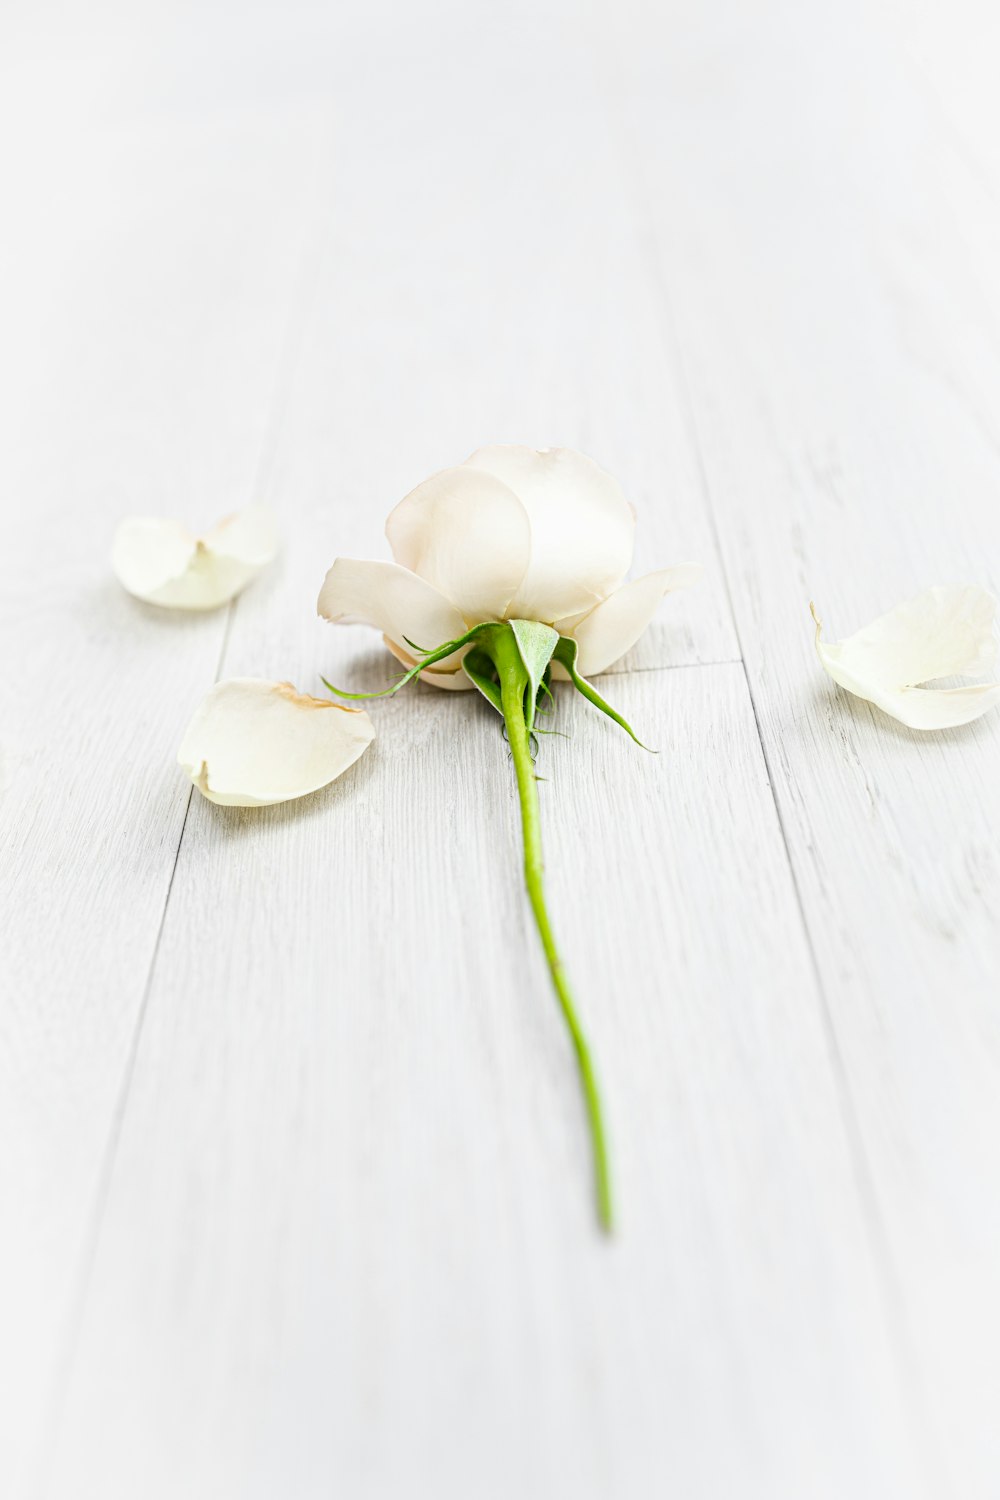 하얀 나무 테이블에 흰 꽃